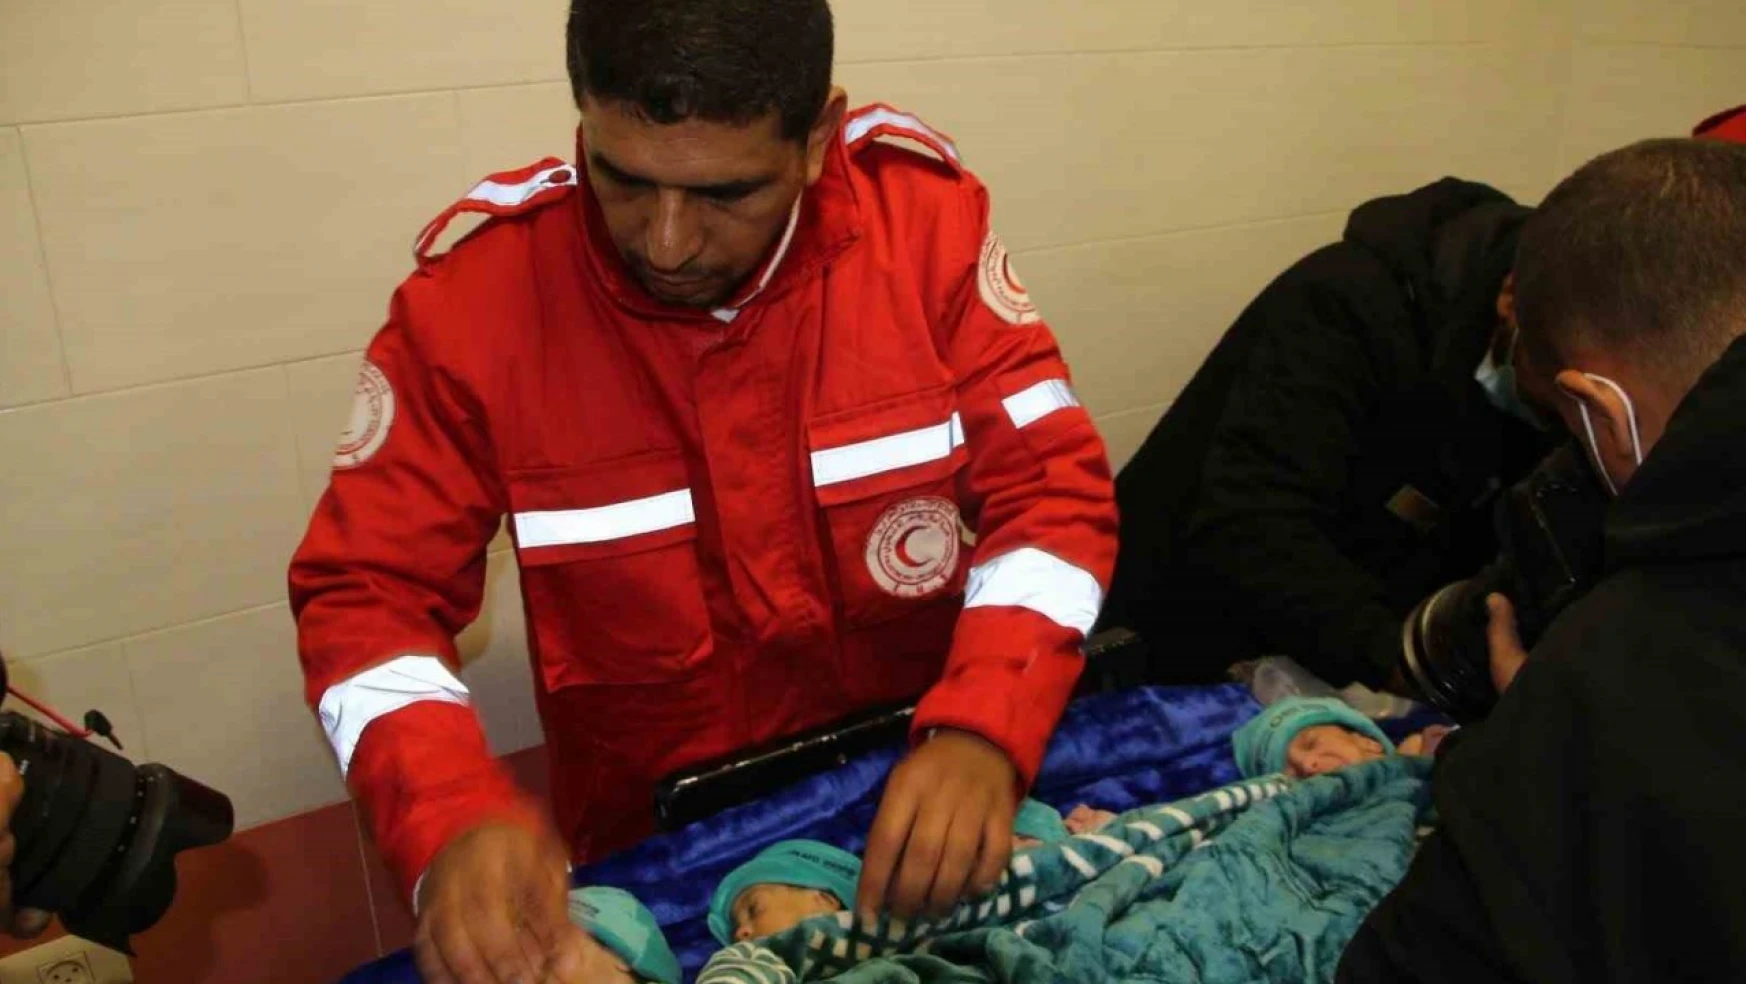 Şifa Hastanesi'nden tahliye edilen 28 prematüre bebek Mısır'a götürüldü